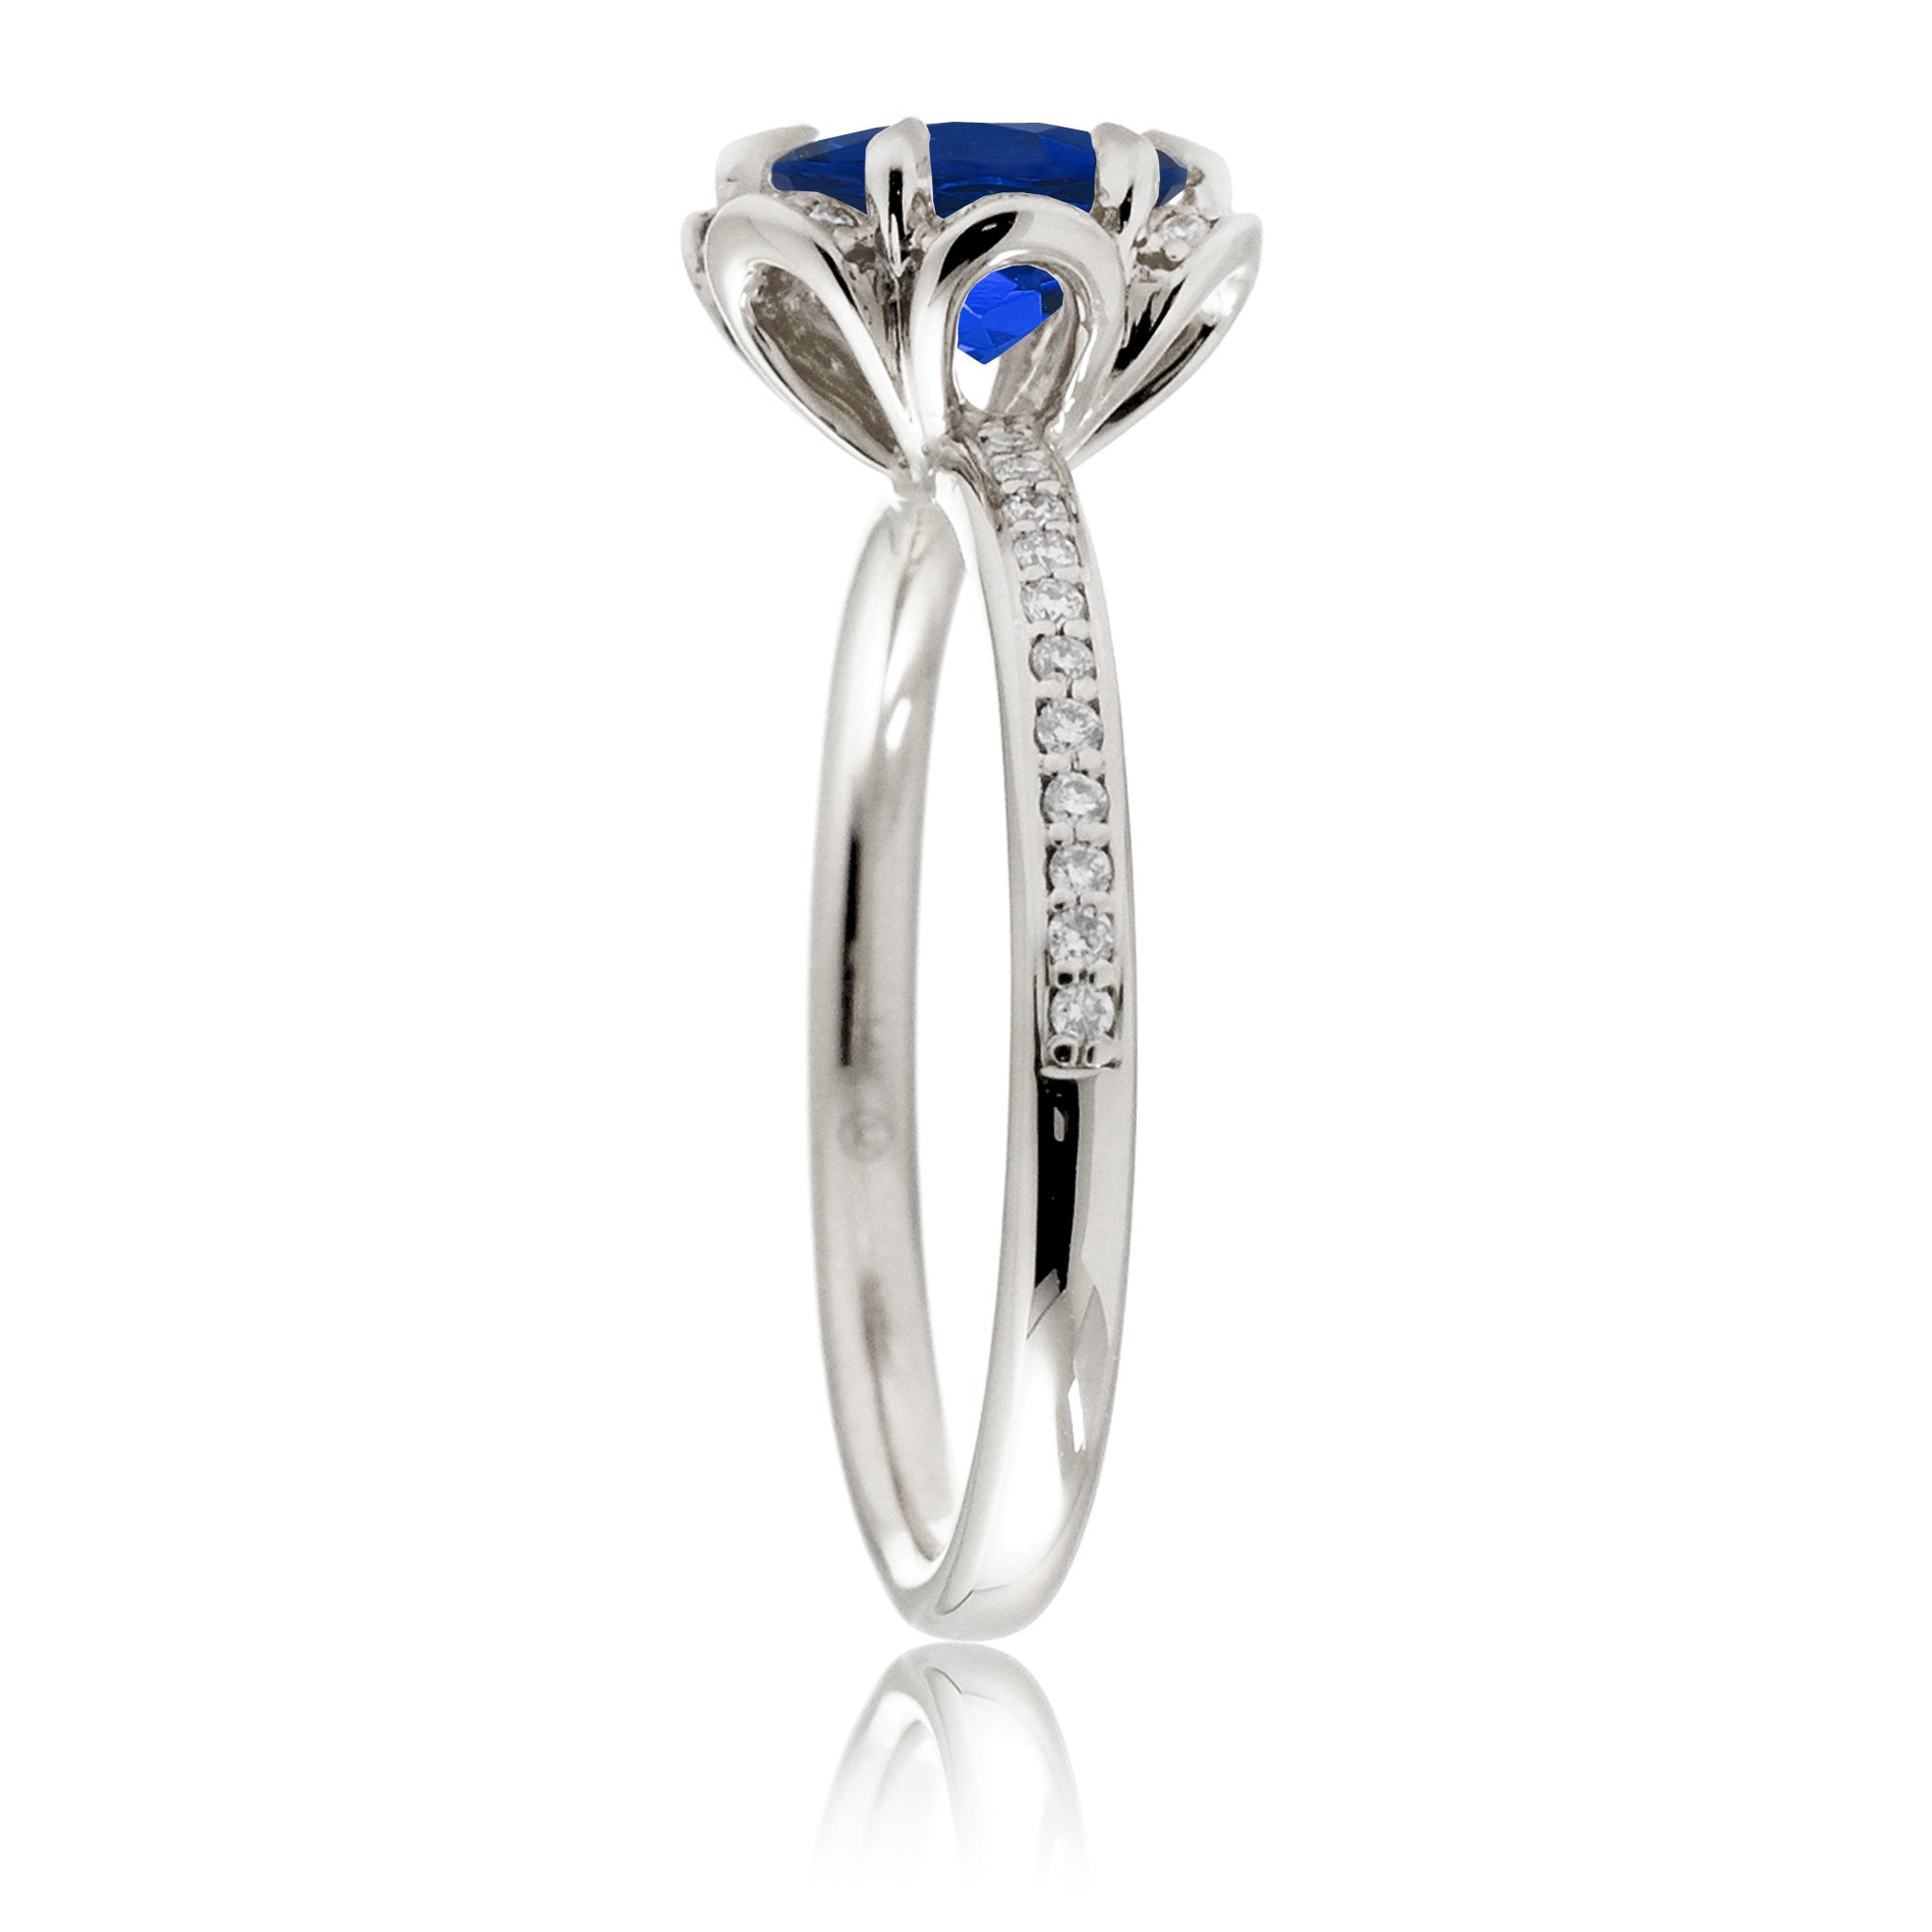 Sapphire ring diamond flower basket engagement ring white gold